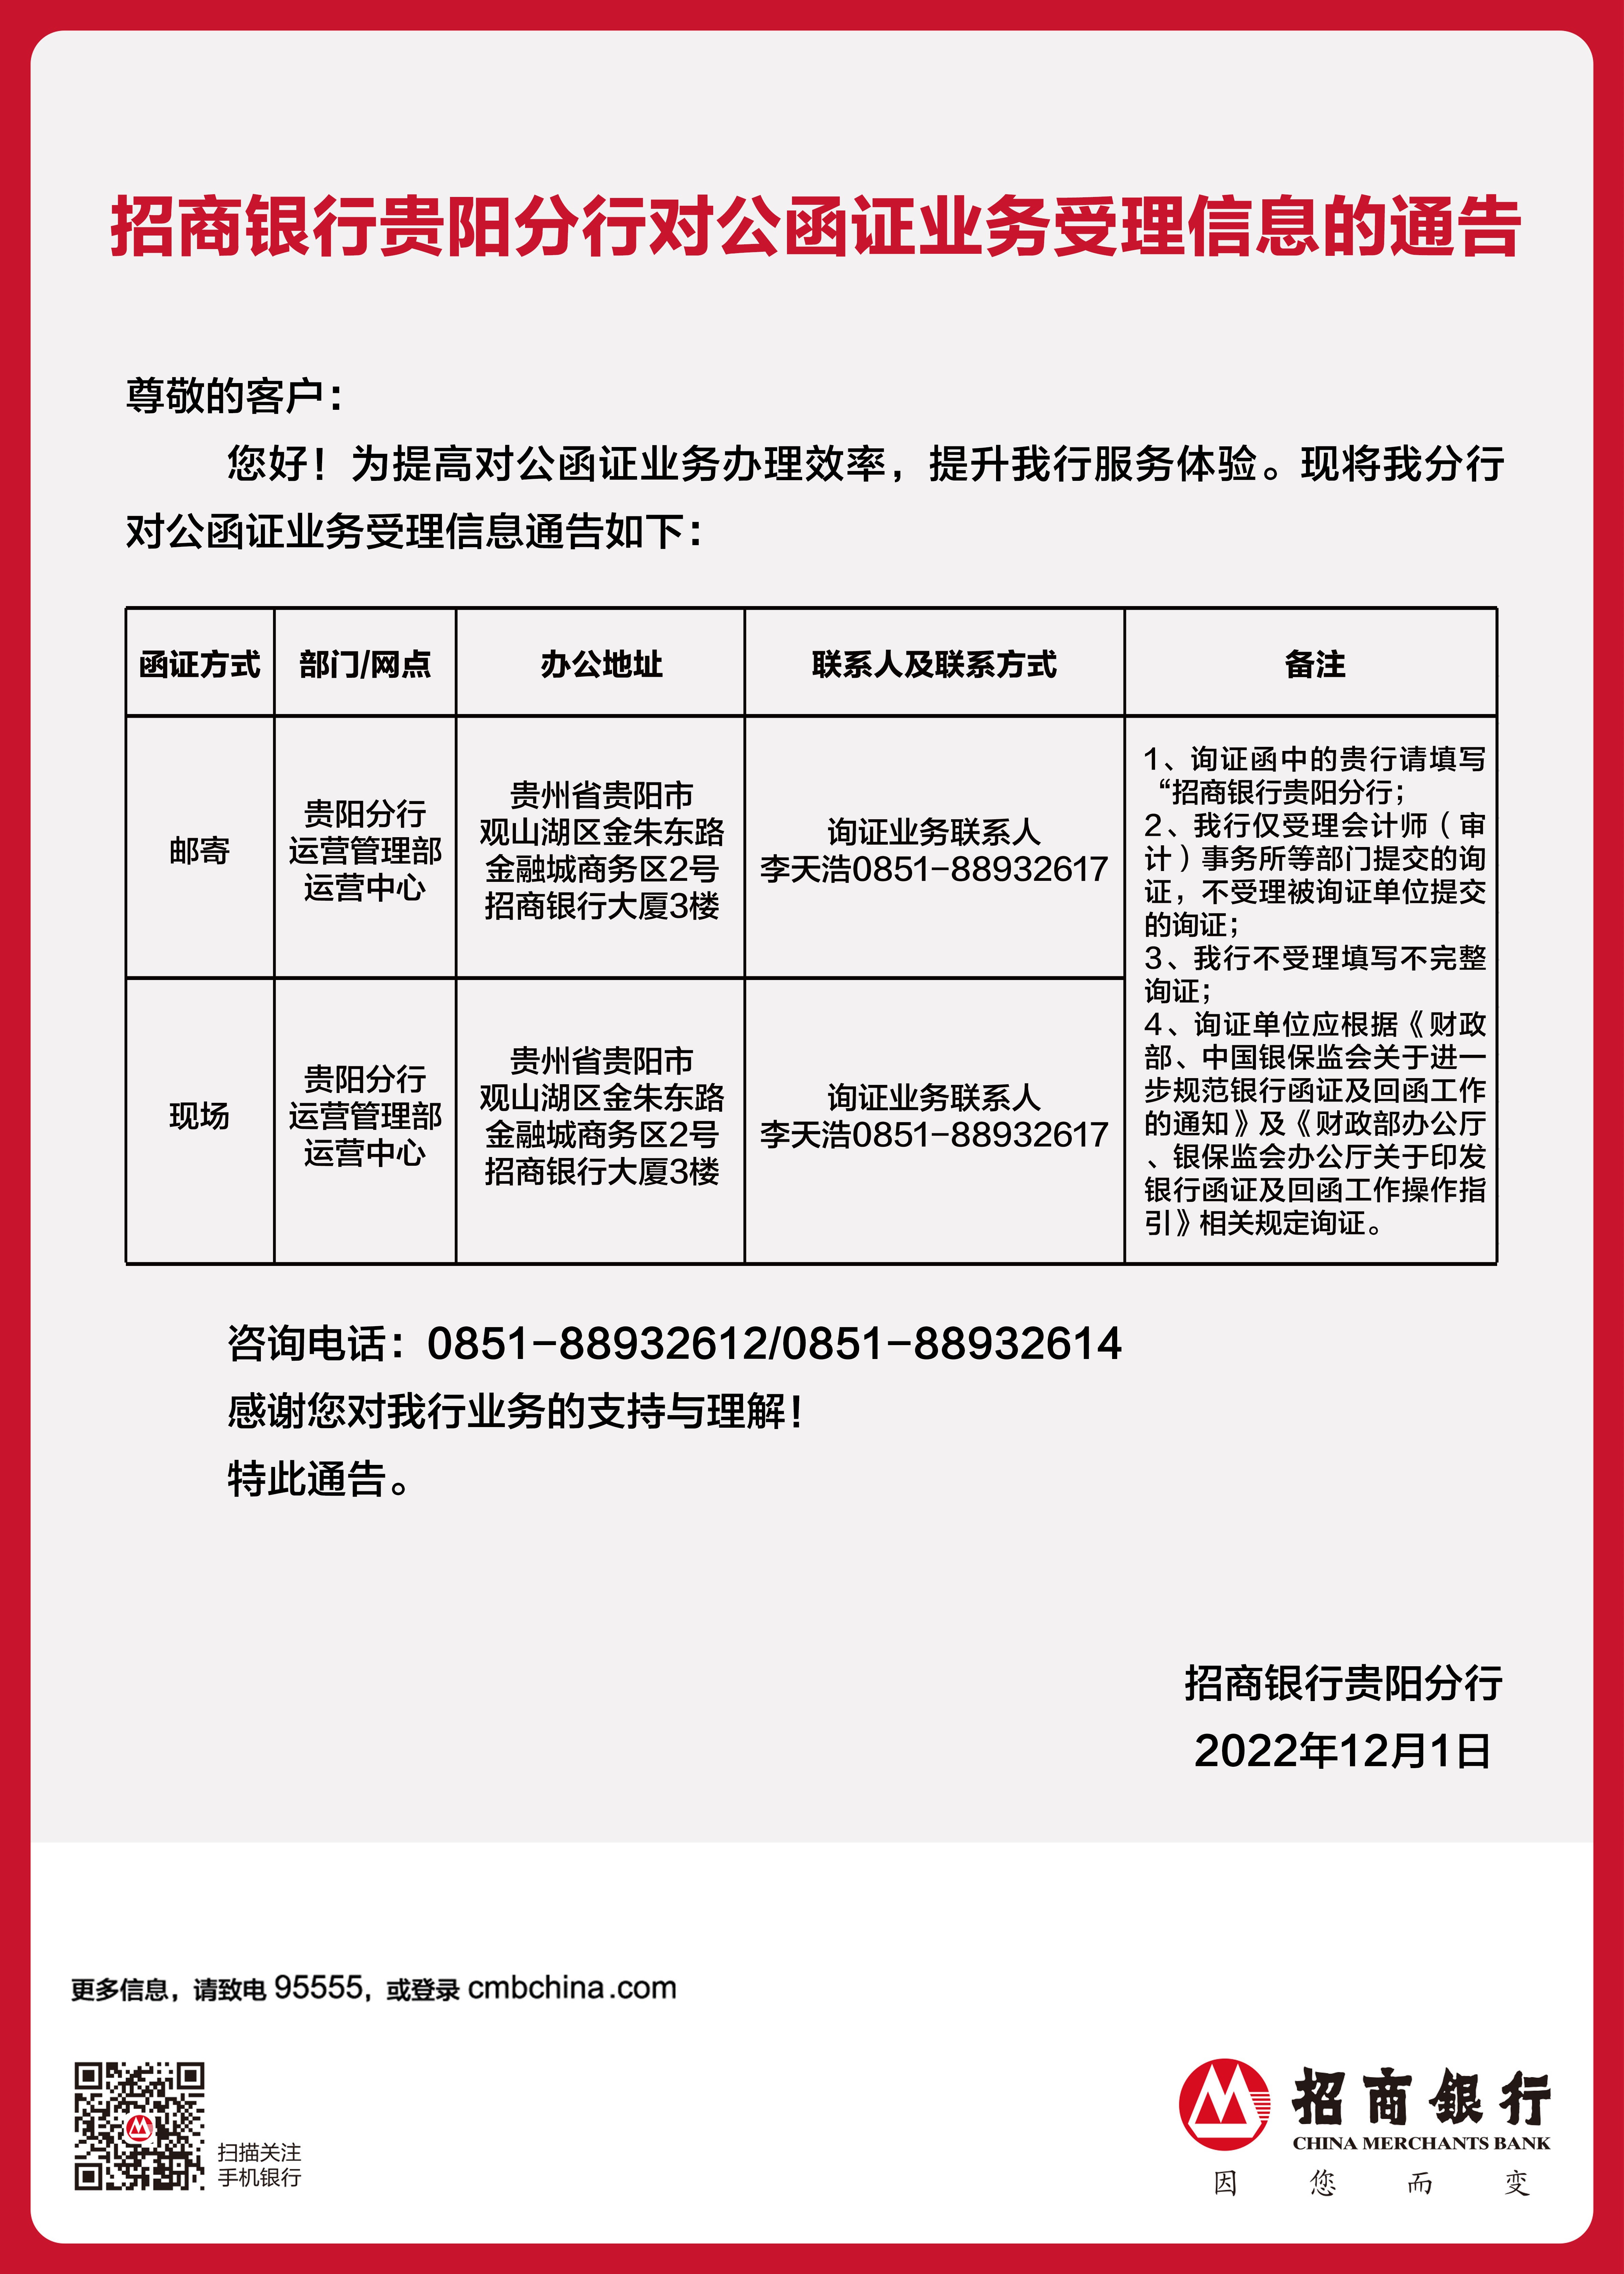 附件1：招商银行贵阳分行对公函证业务受理信息的通告.jpg